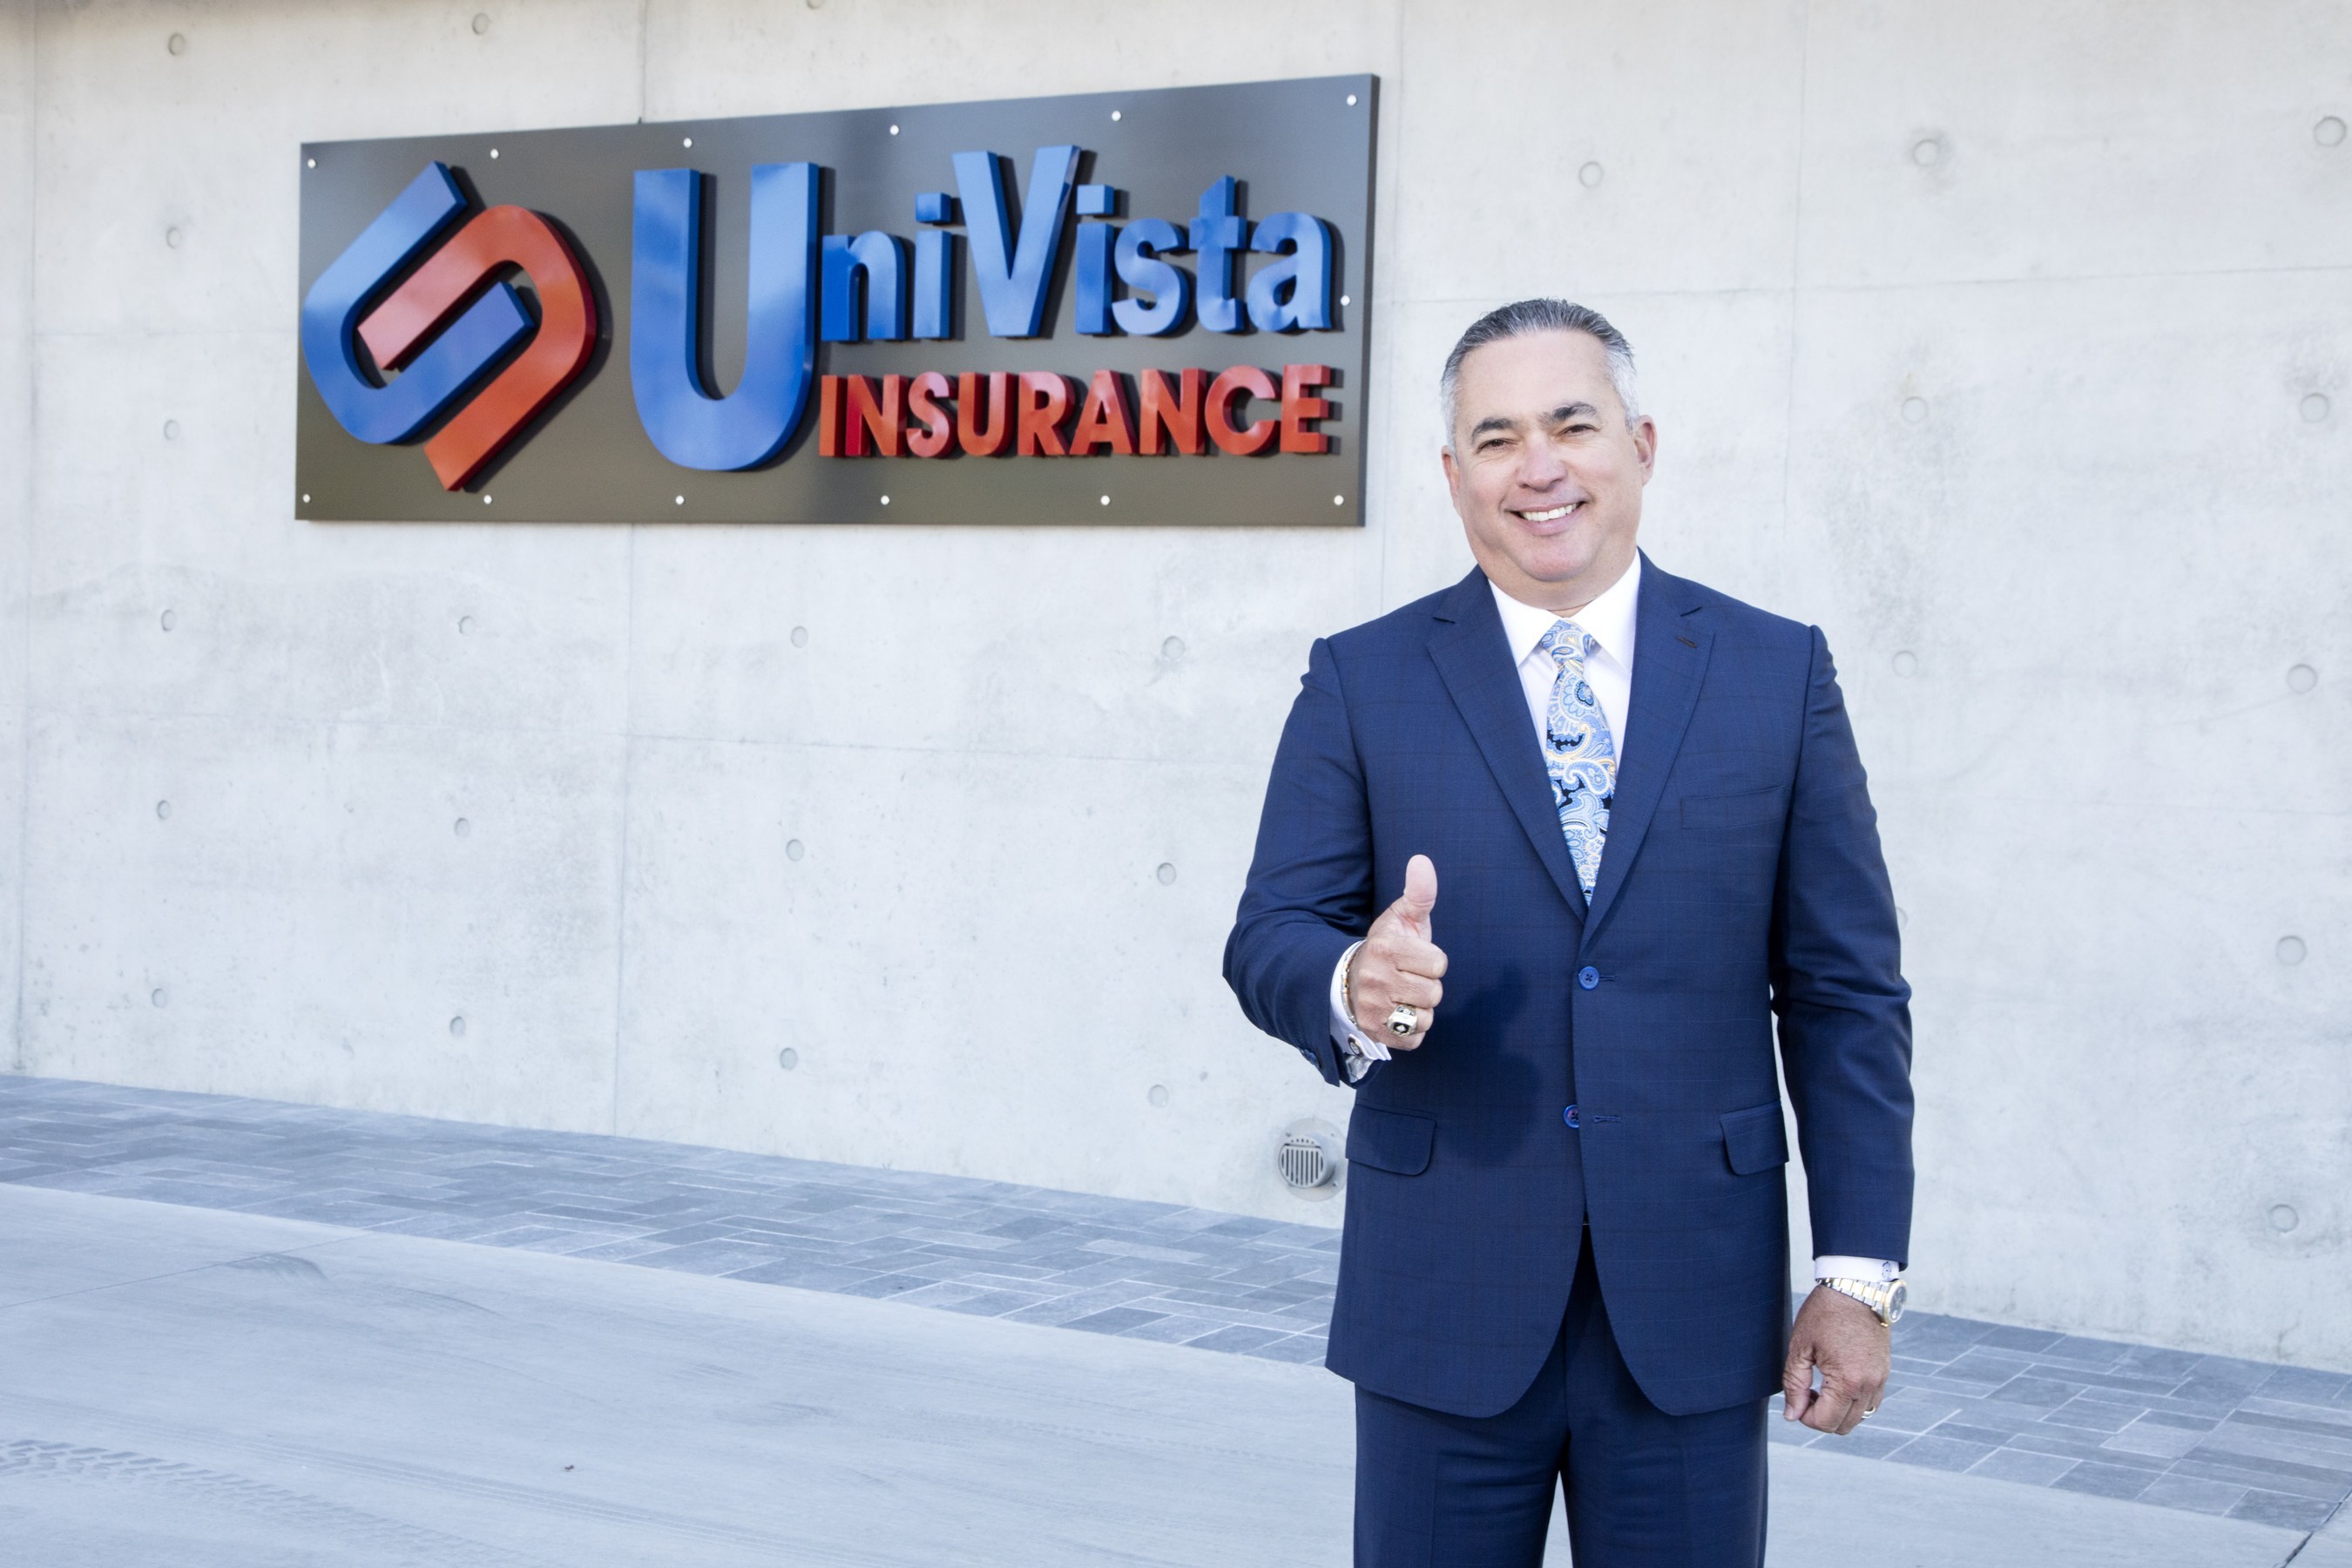 Inc 5000/2020: UniVista Insurance entre las 2000 empresas privadas de mayor crecimiento en EE.UU.